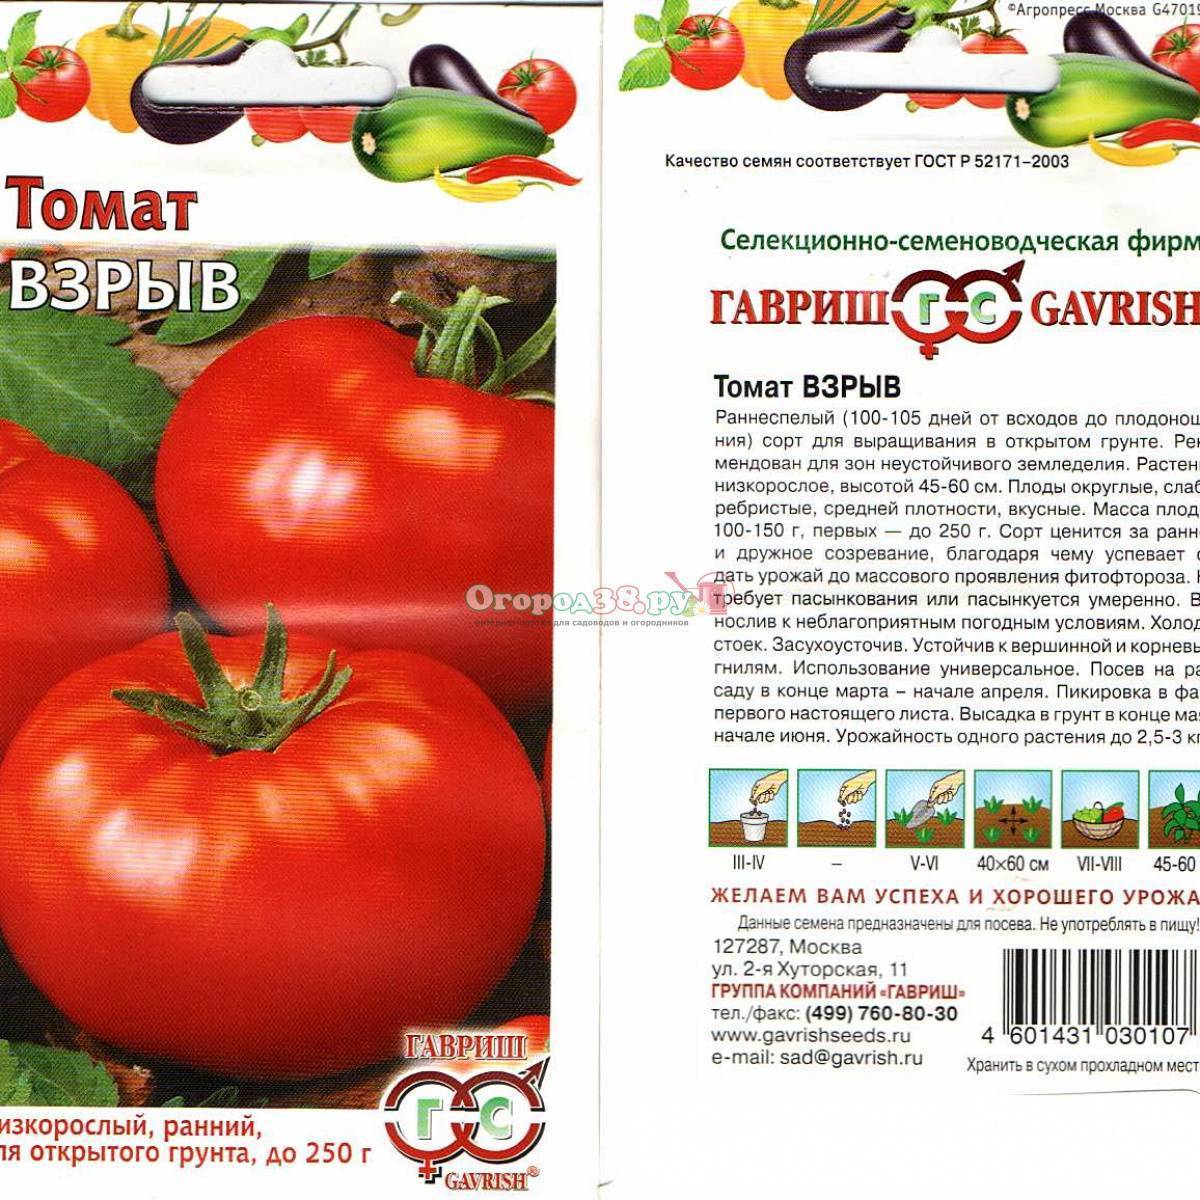 Описание сорта томата «взрыв», фото помидоров и отзывы садоводов-любителей